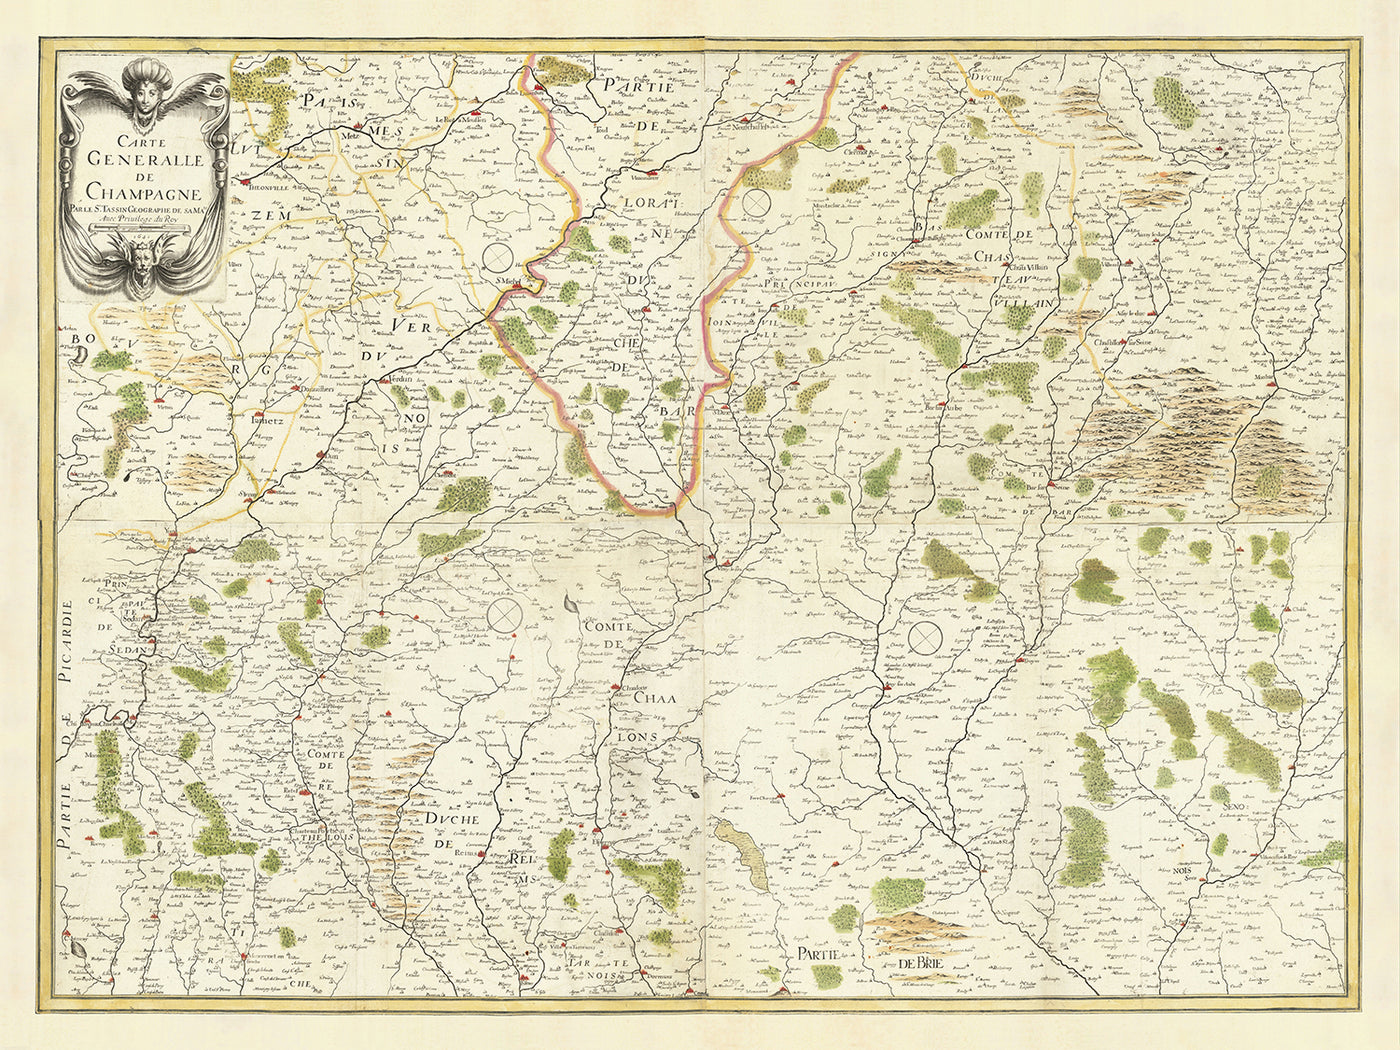 Alte Karte der Champagne, Frankreich von Christopher Tassin, 1641: Reims, Épernay, Troyes, Châlons-en-Champagne, Vitry-le-François